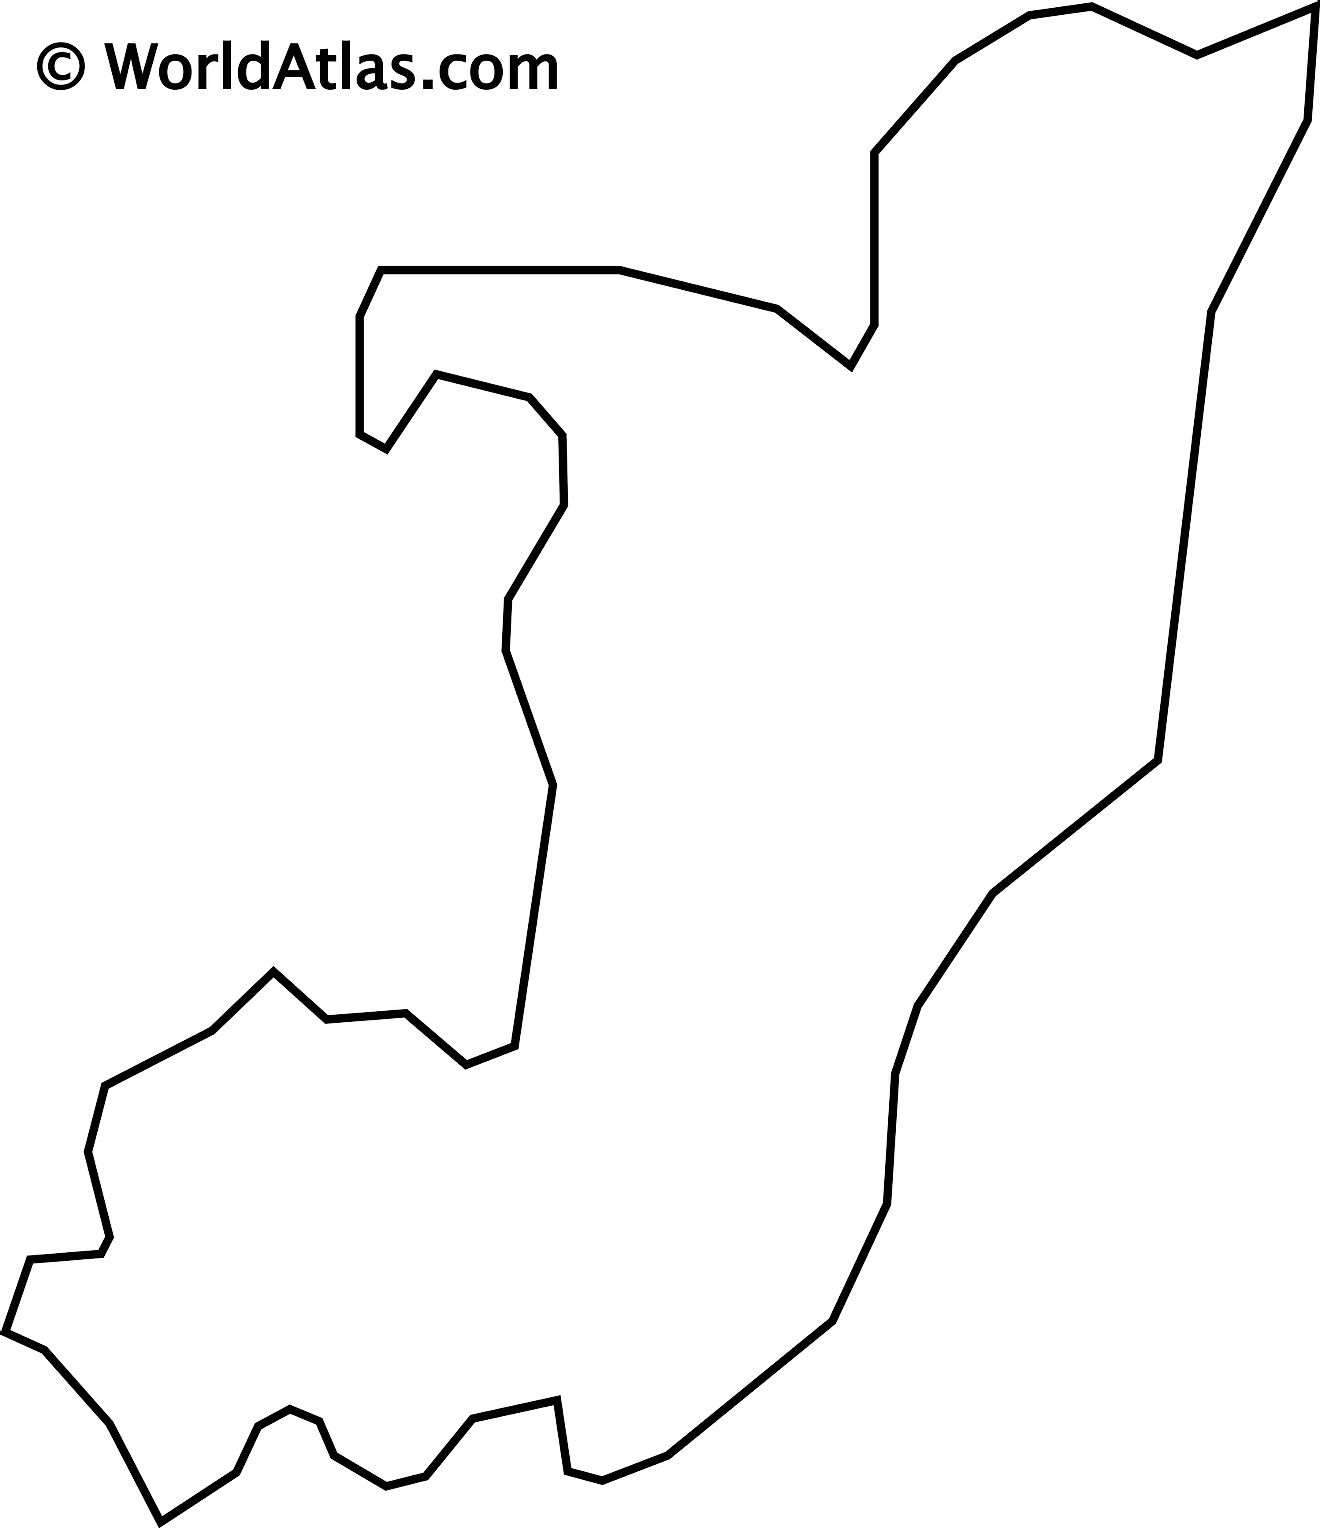 Mapa de contorno en blanco del Congo